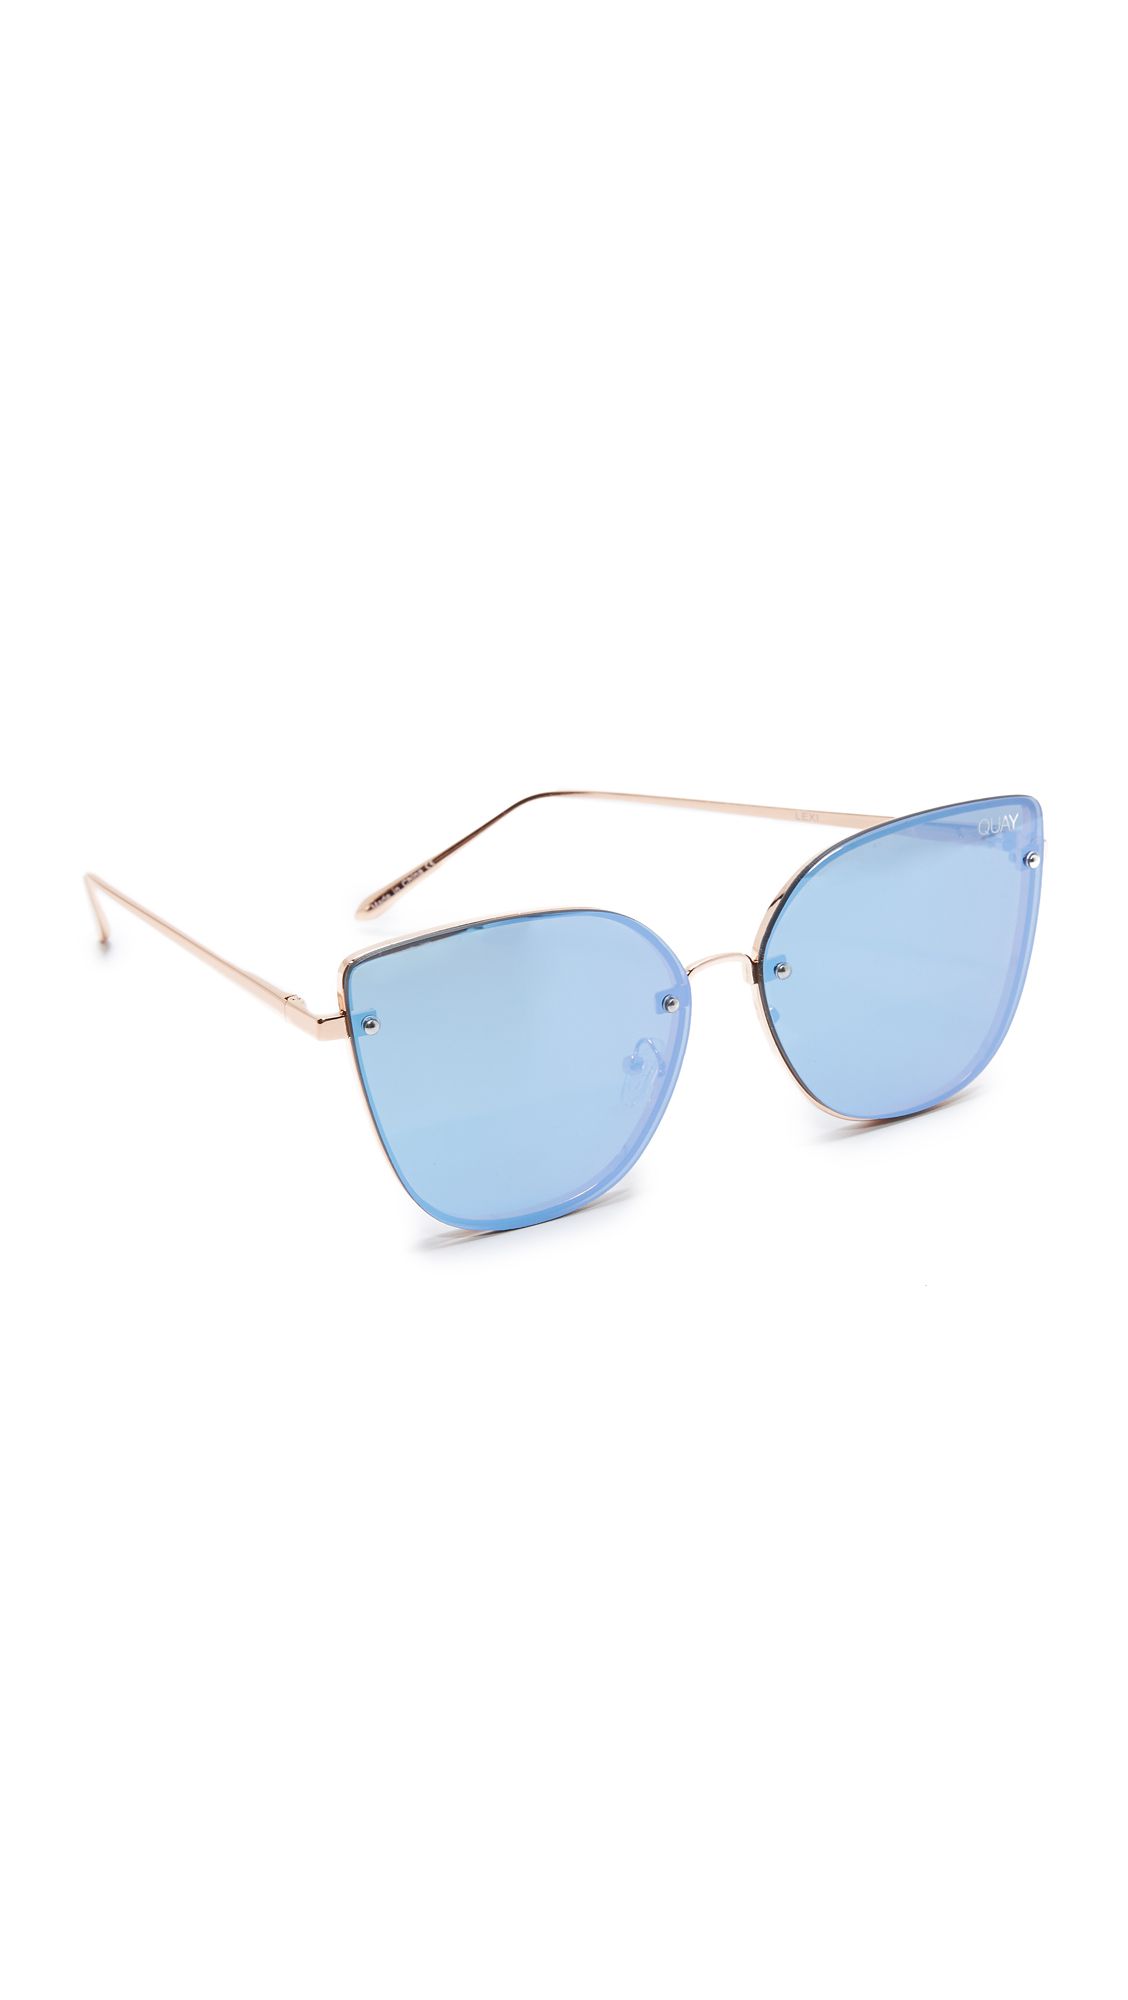 Lexi Sunglasses | Shopbop